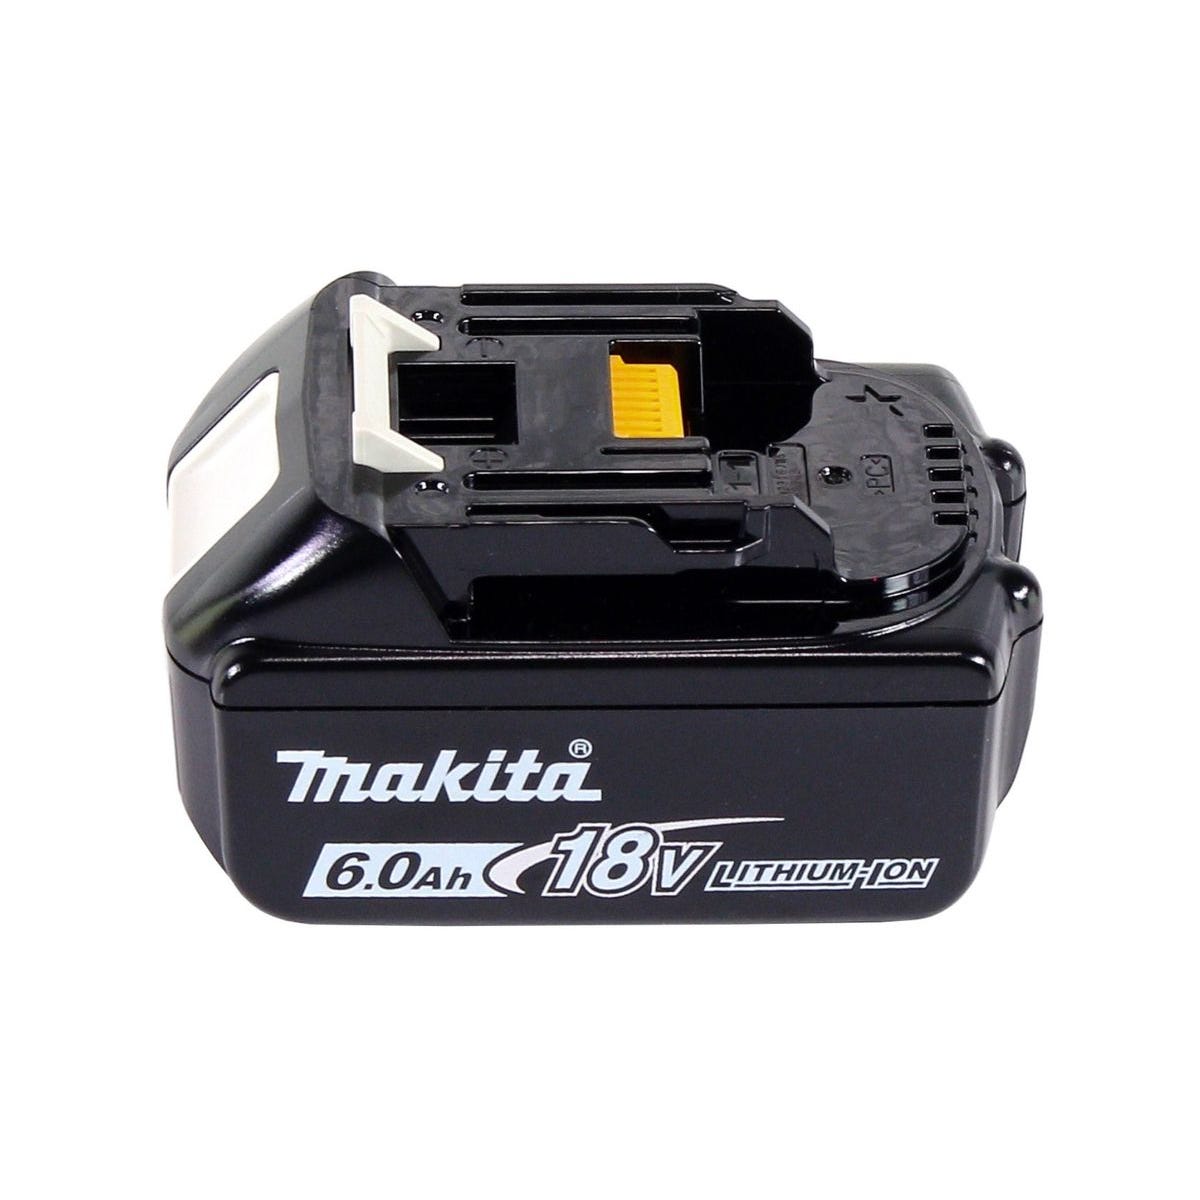 Makita DHP 483 G1J Perceuse-visseuse à percussion sans fil 18 V 40 Nm + 1x Batterie 6,0 Ah + Makpac - sans chargeur 3